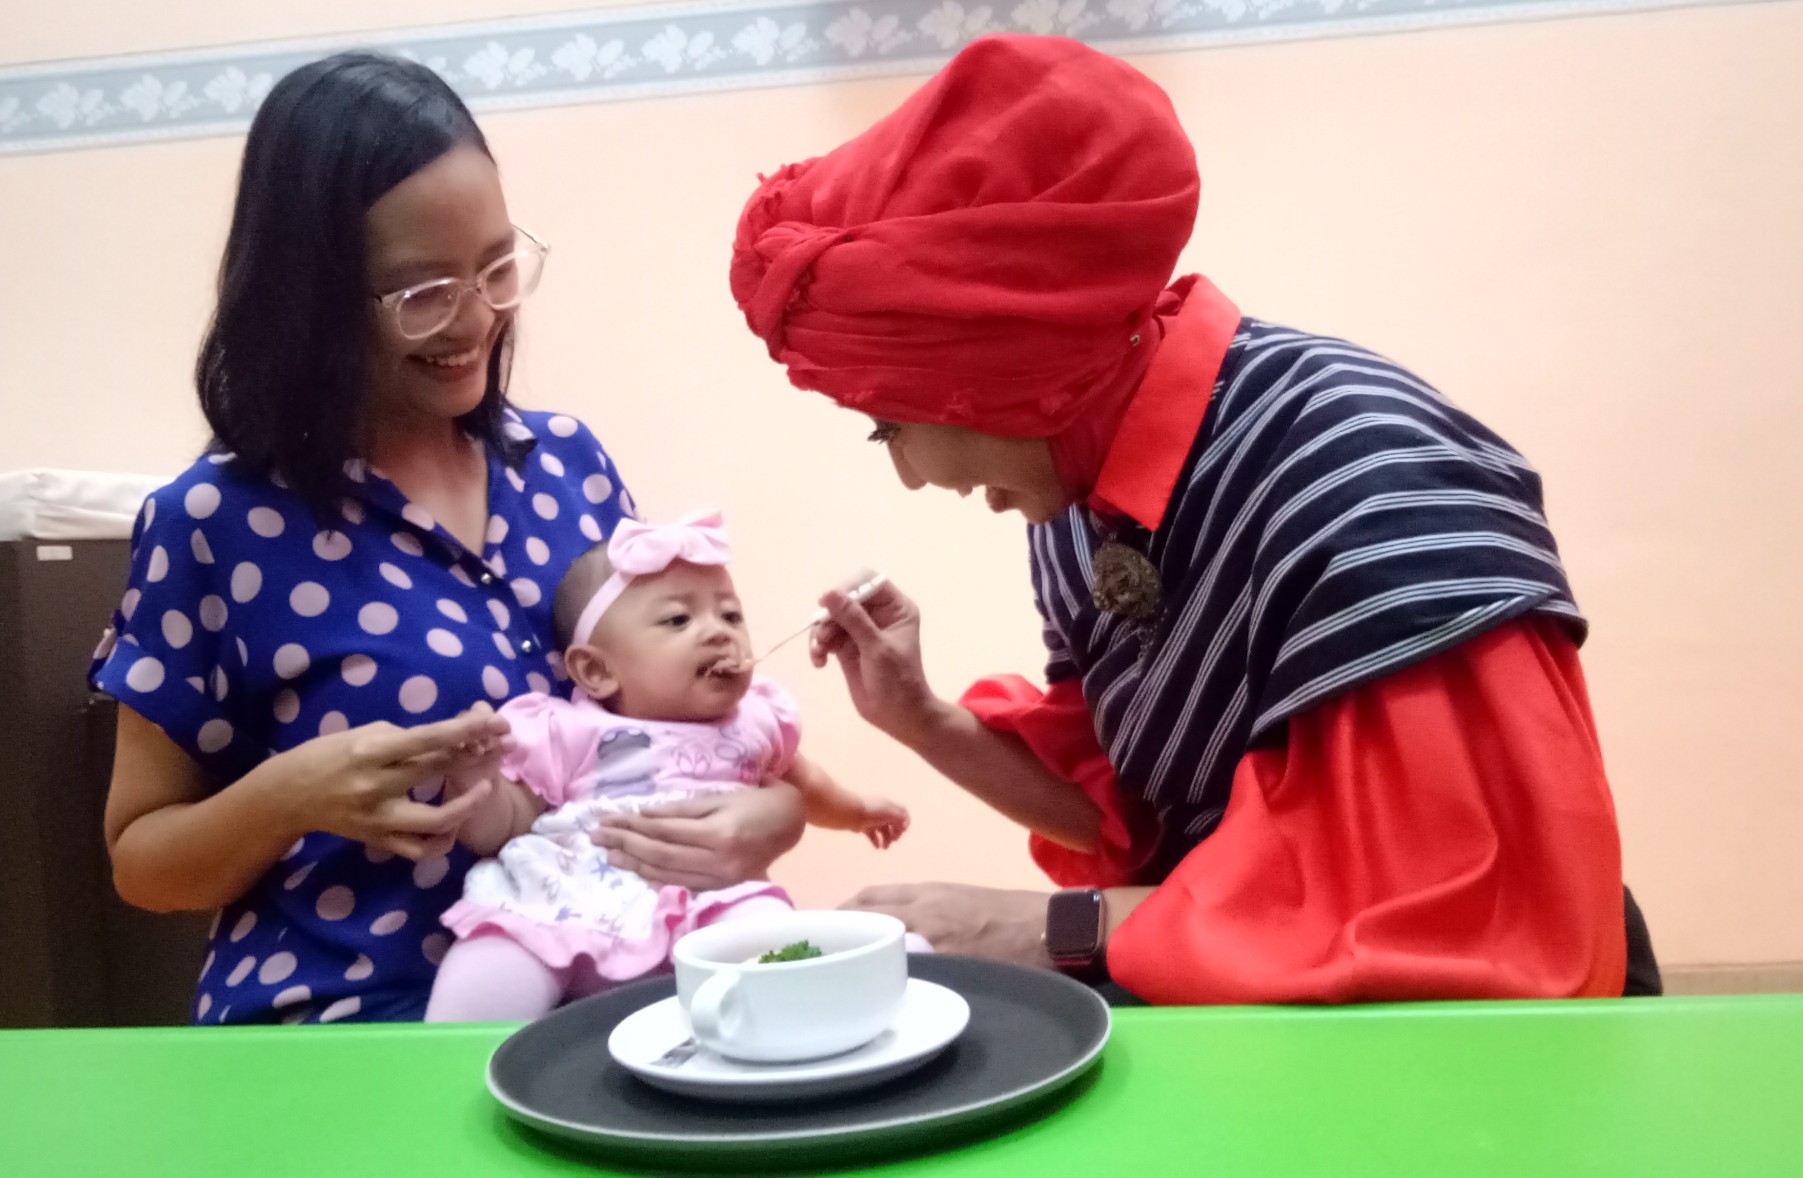 dr. Dini Adityarini,SpA dokter spesialis anak dari Rumah Sakit Ibu dan Anak Kendangsari Merr saat menyuapi menu MPASI dari hati ayam kepada salah satu bayi.  (Foto: Pita/ ngopibareng. Id)  